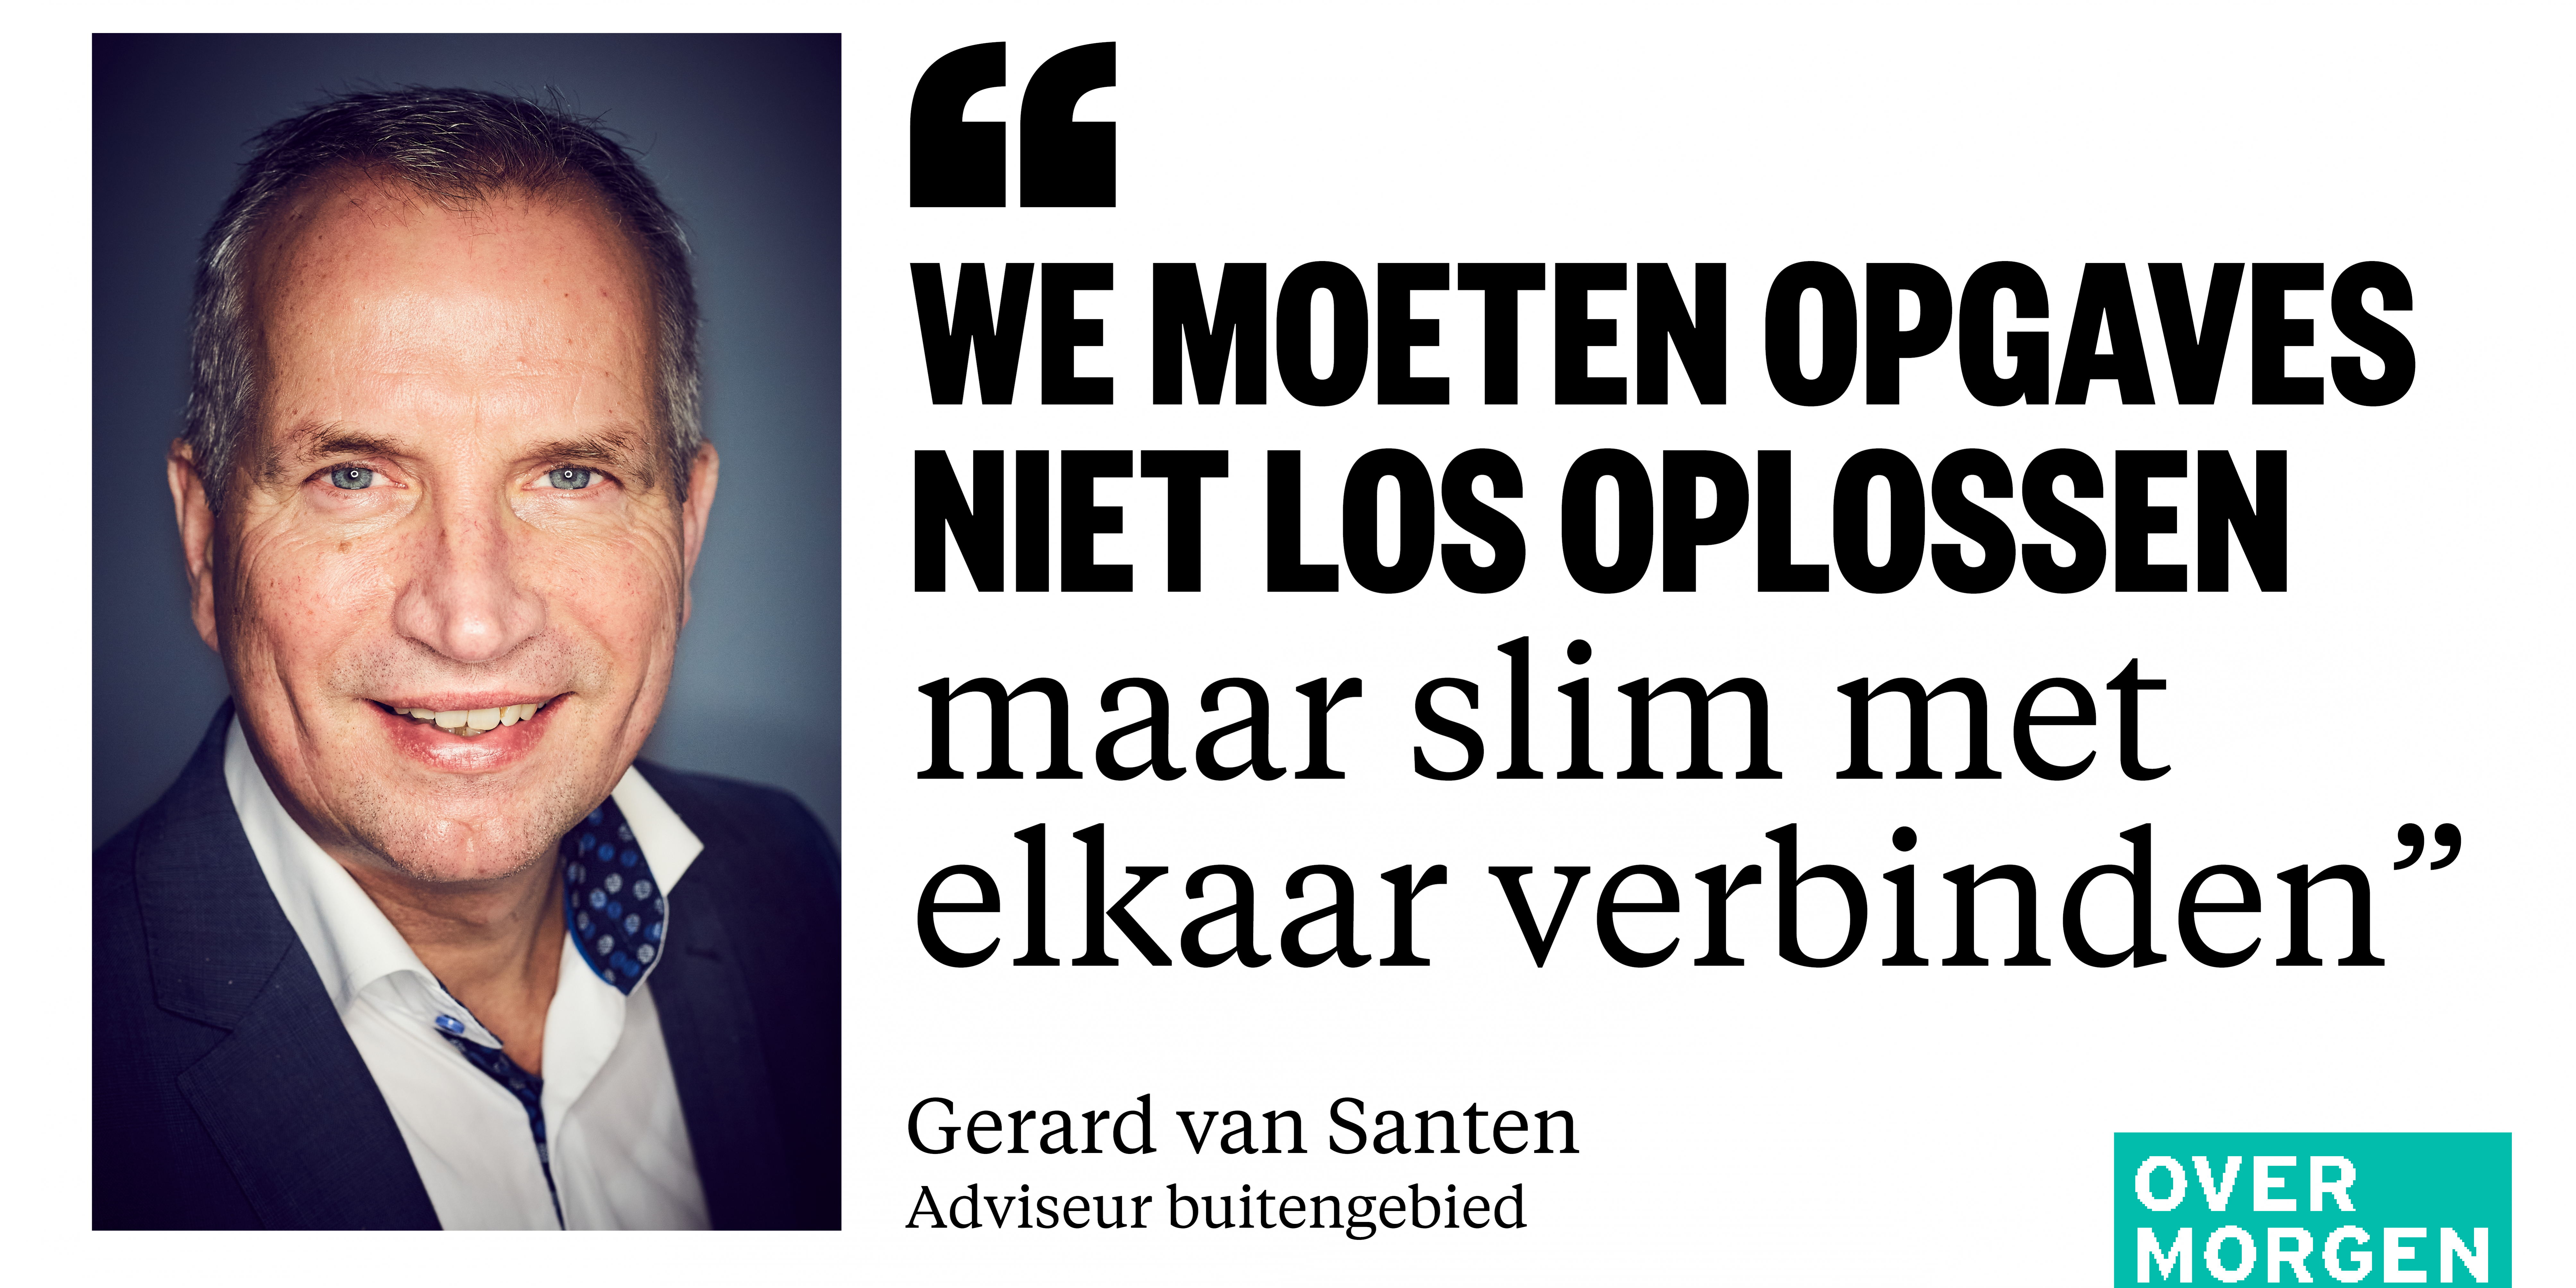 Gerard van Santen